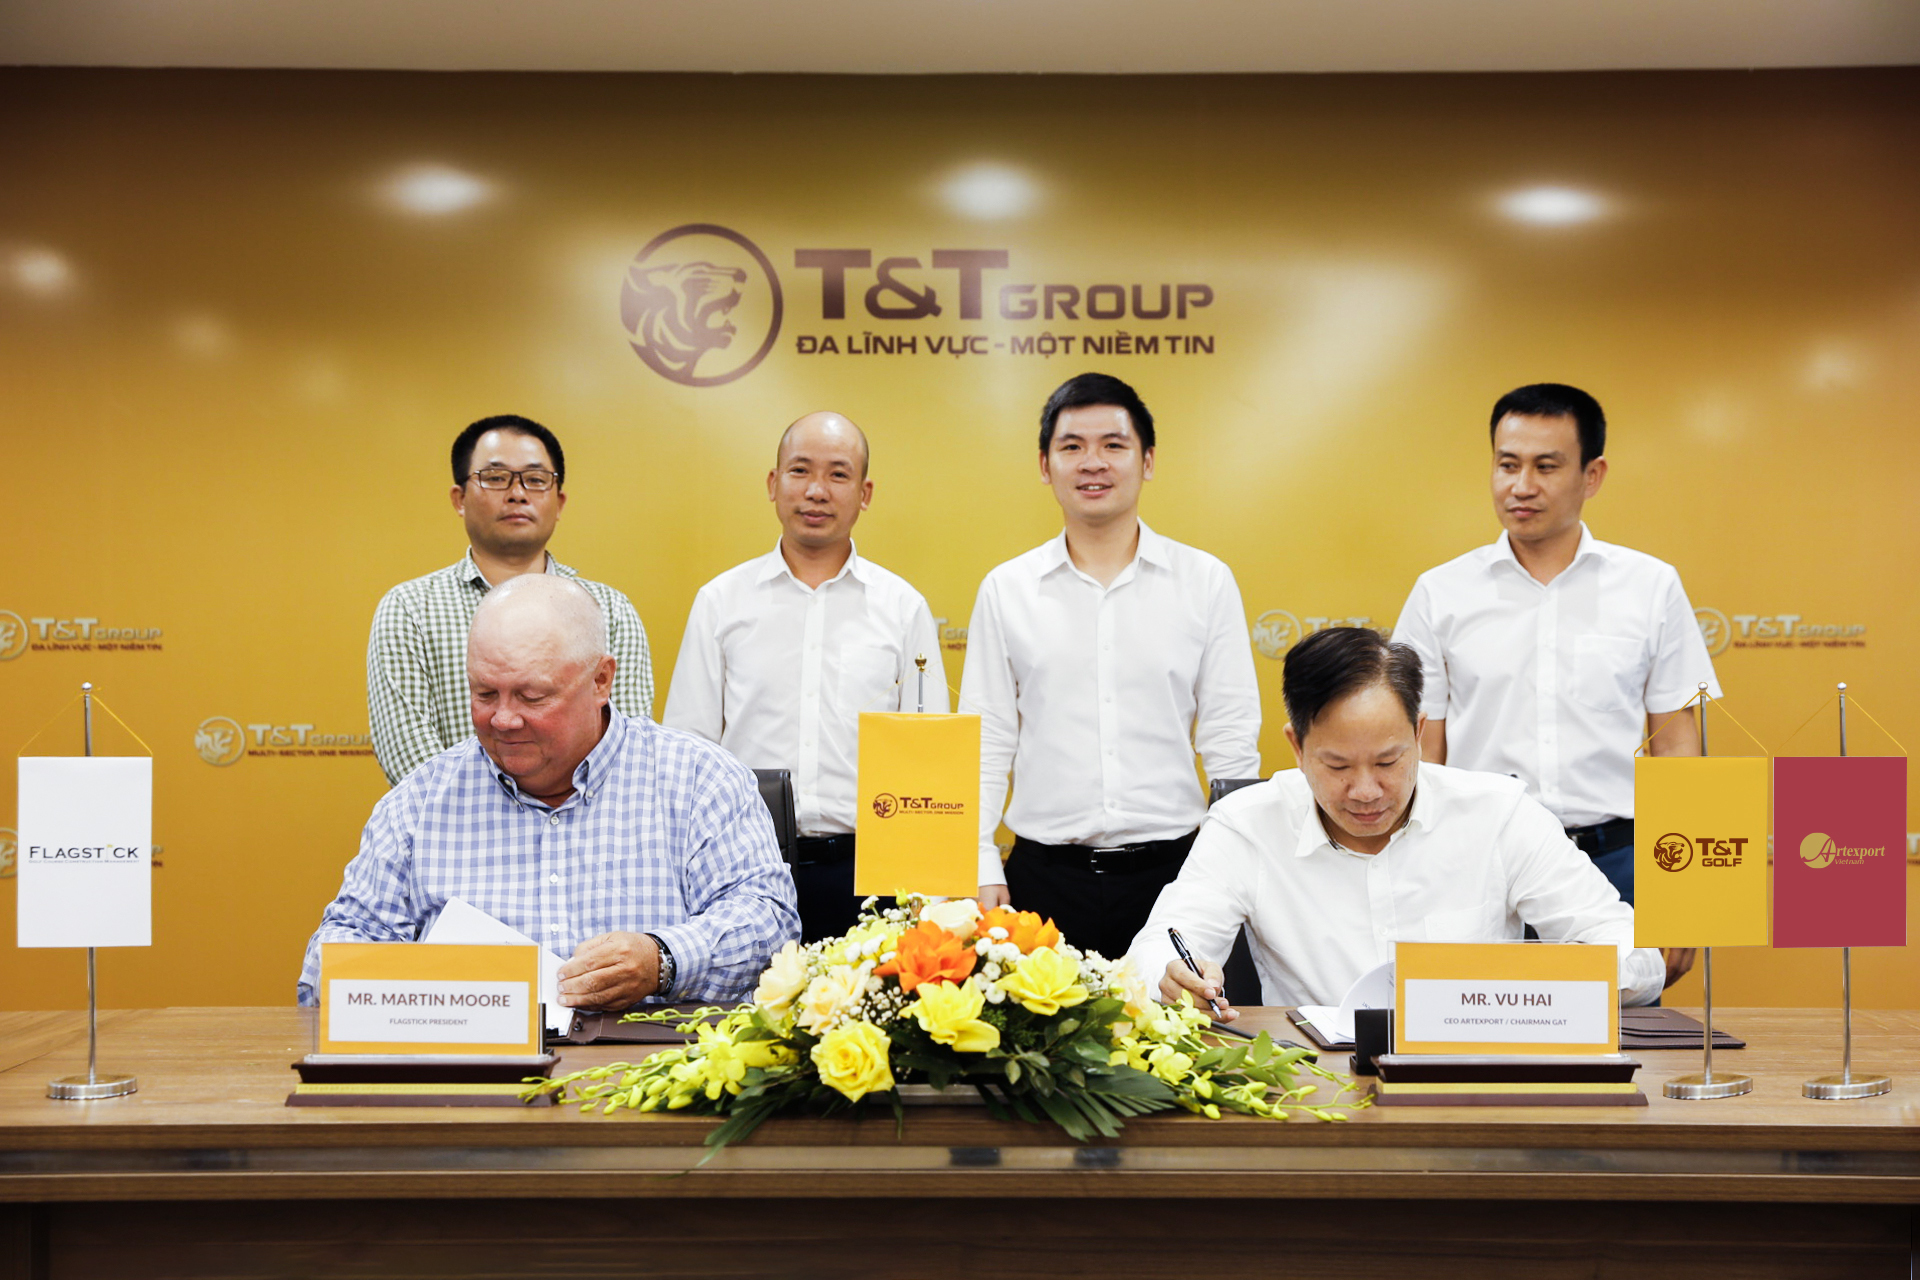 T&T Group ra mắt thương hiệu T&T Golf với dự án đầu tiên tại Phú Thọ - Ảnh 4.